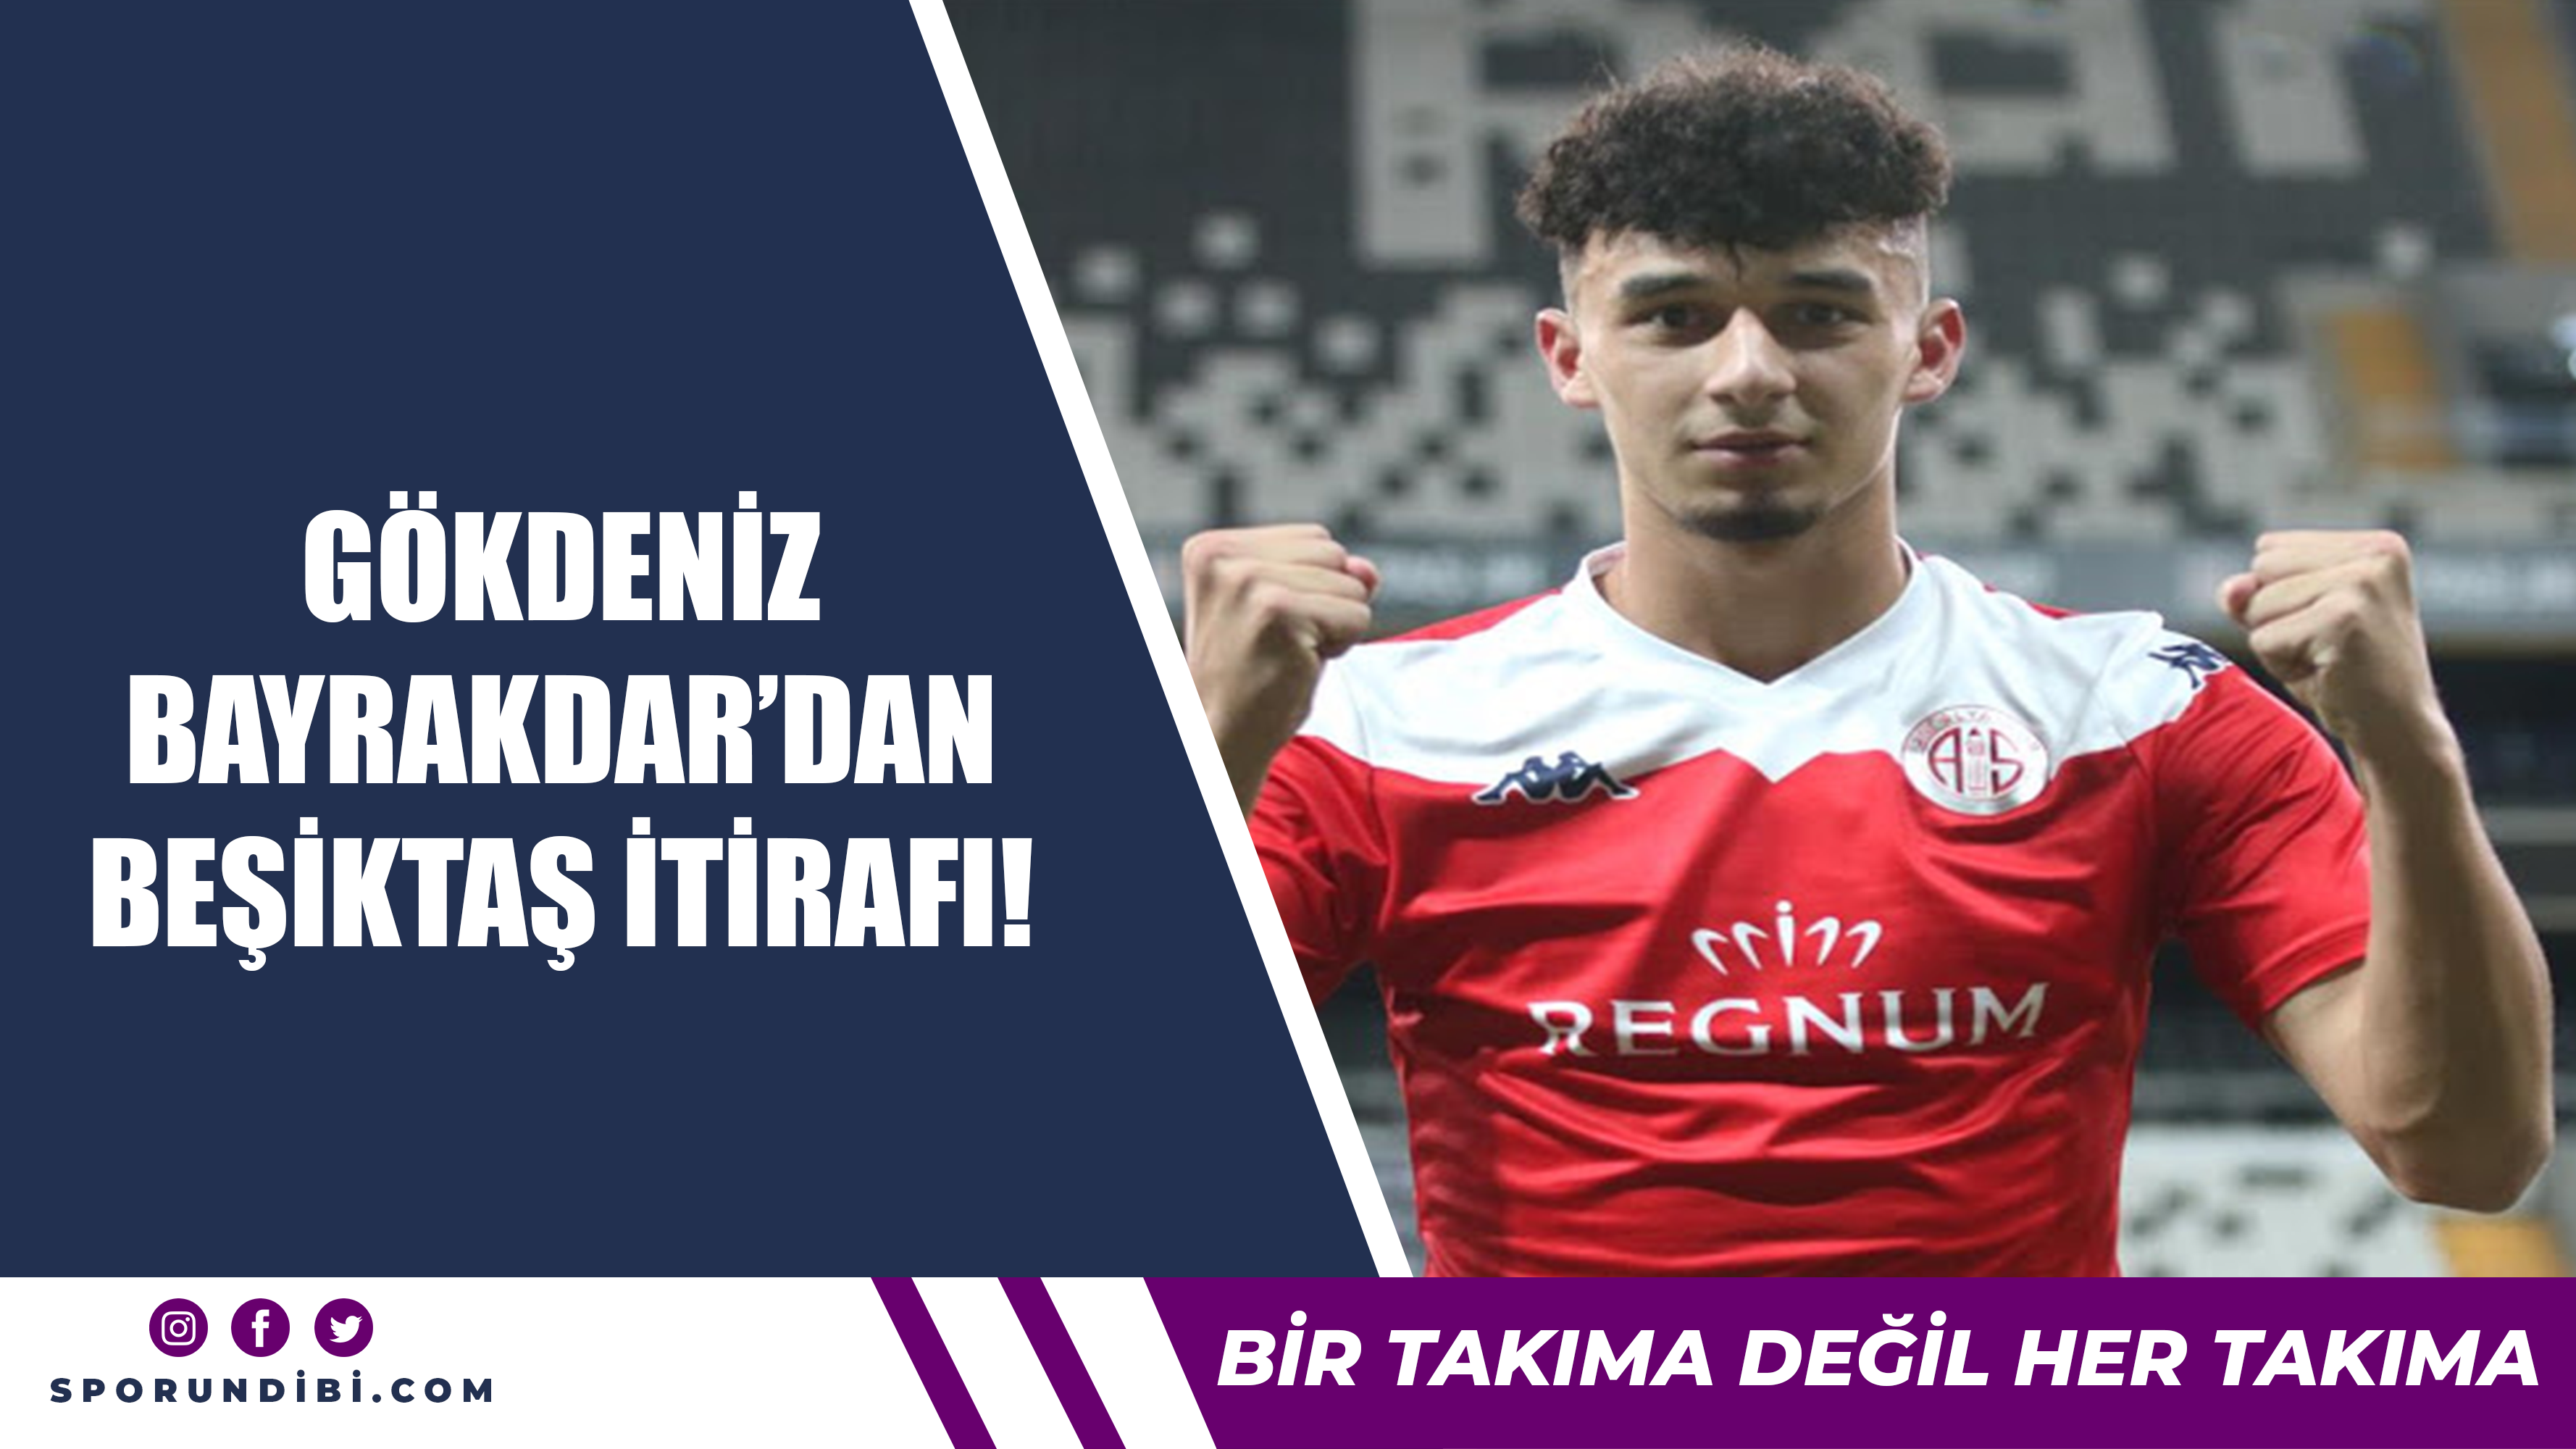 Gökdeniz Bayrakdar'dan Beşiktaş itirafı!